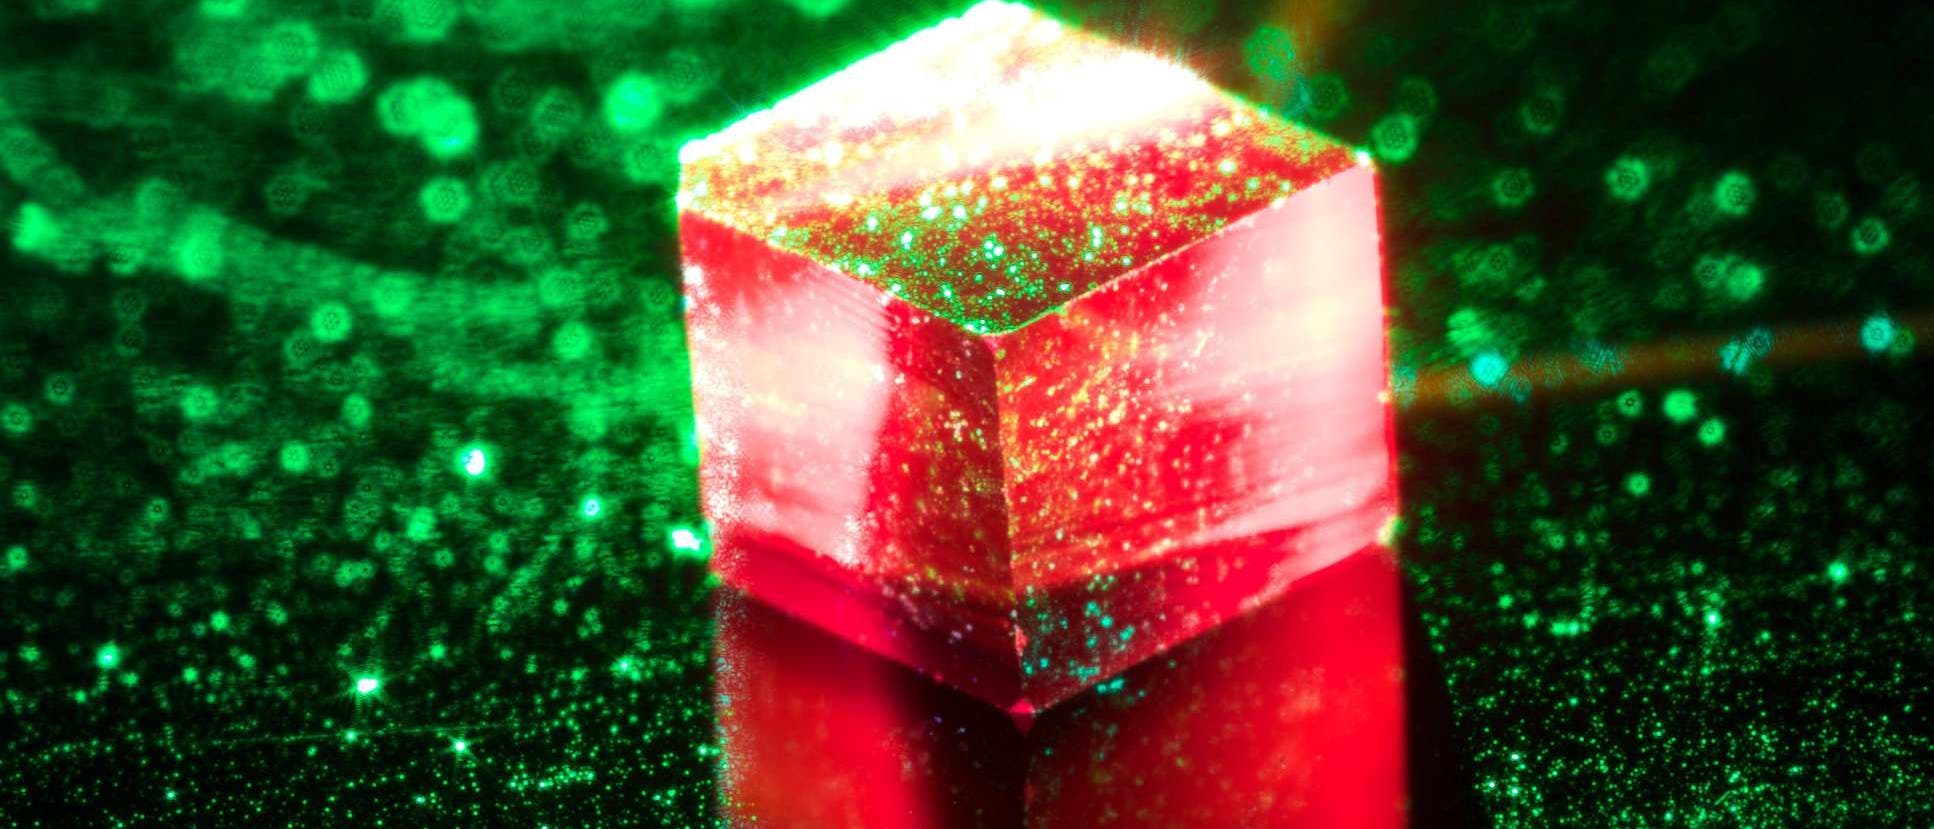 Ein würfelfürmiger Diamantkristall leuchtet rot unter grünem Laserlicht.